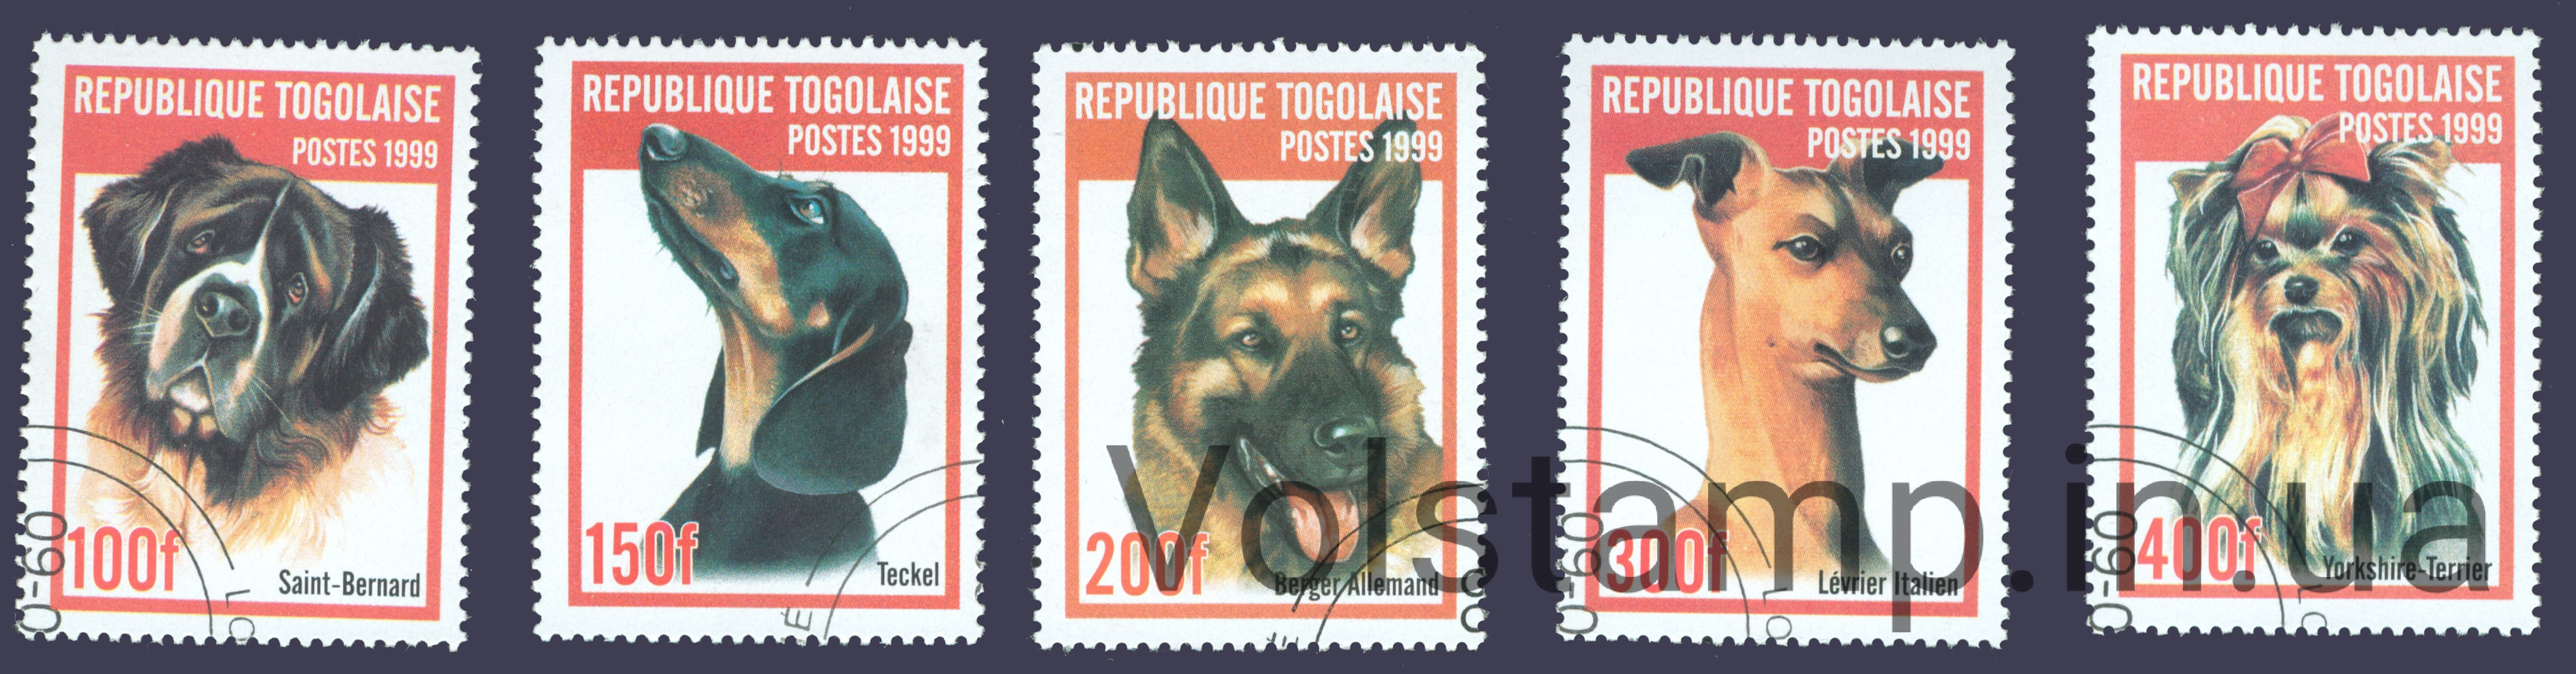 1999 Того Не полная серия марок (Собаки) Гашеные №2823-2828